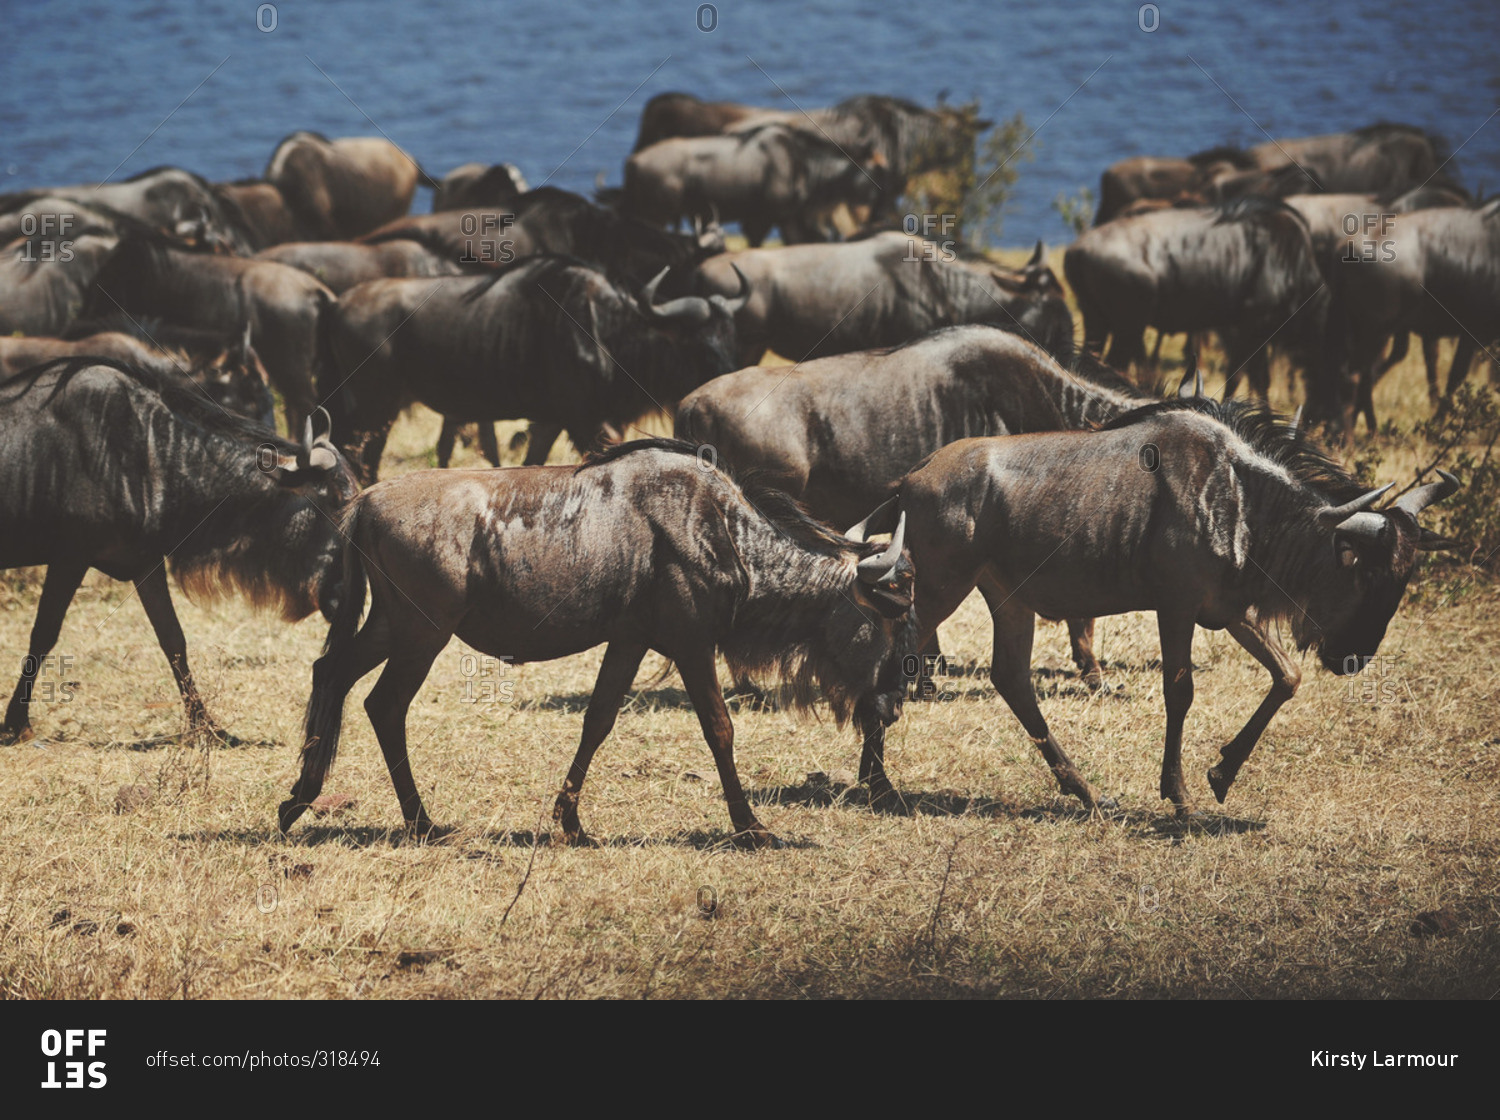 A herd of wildebeest near a waterhole in rural Tanzania